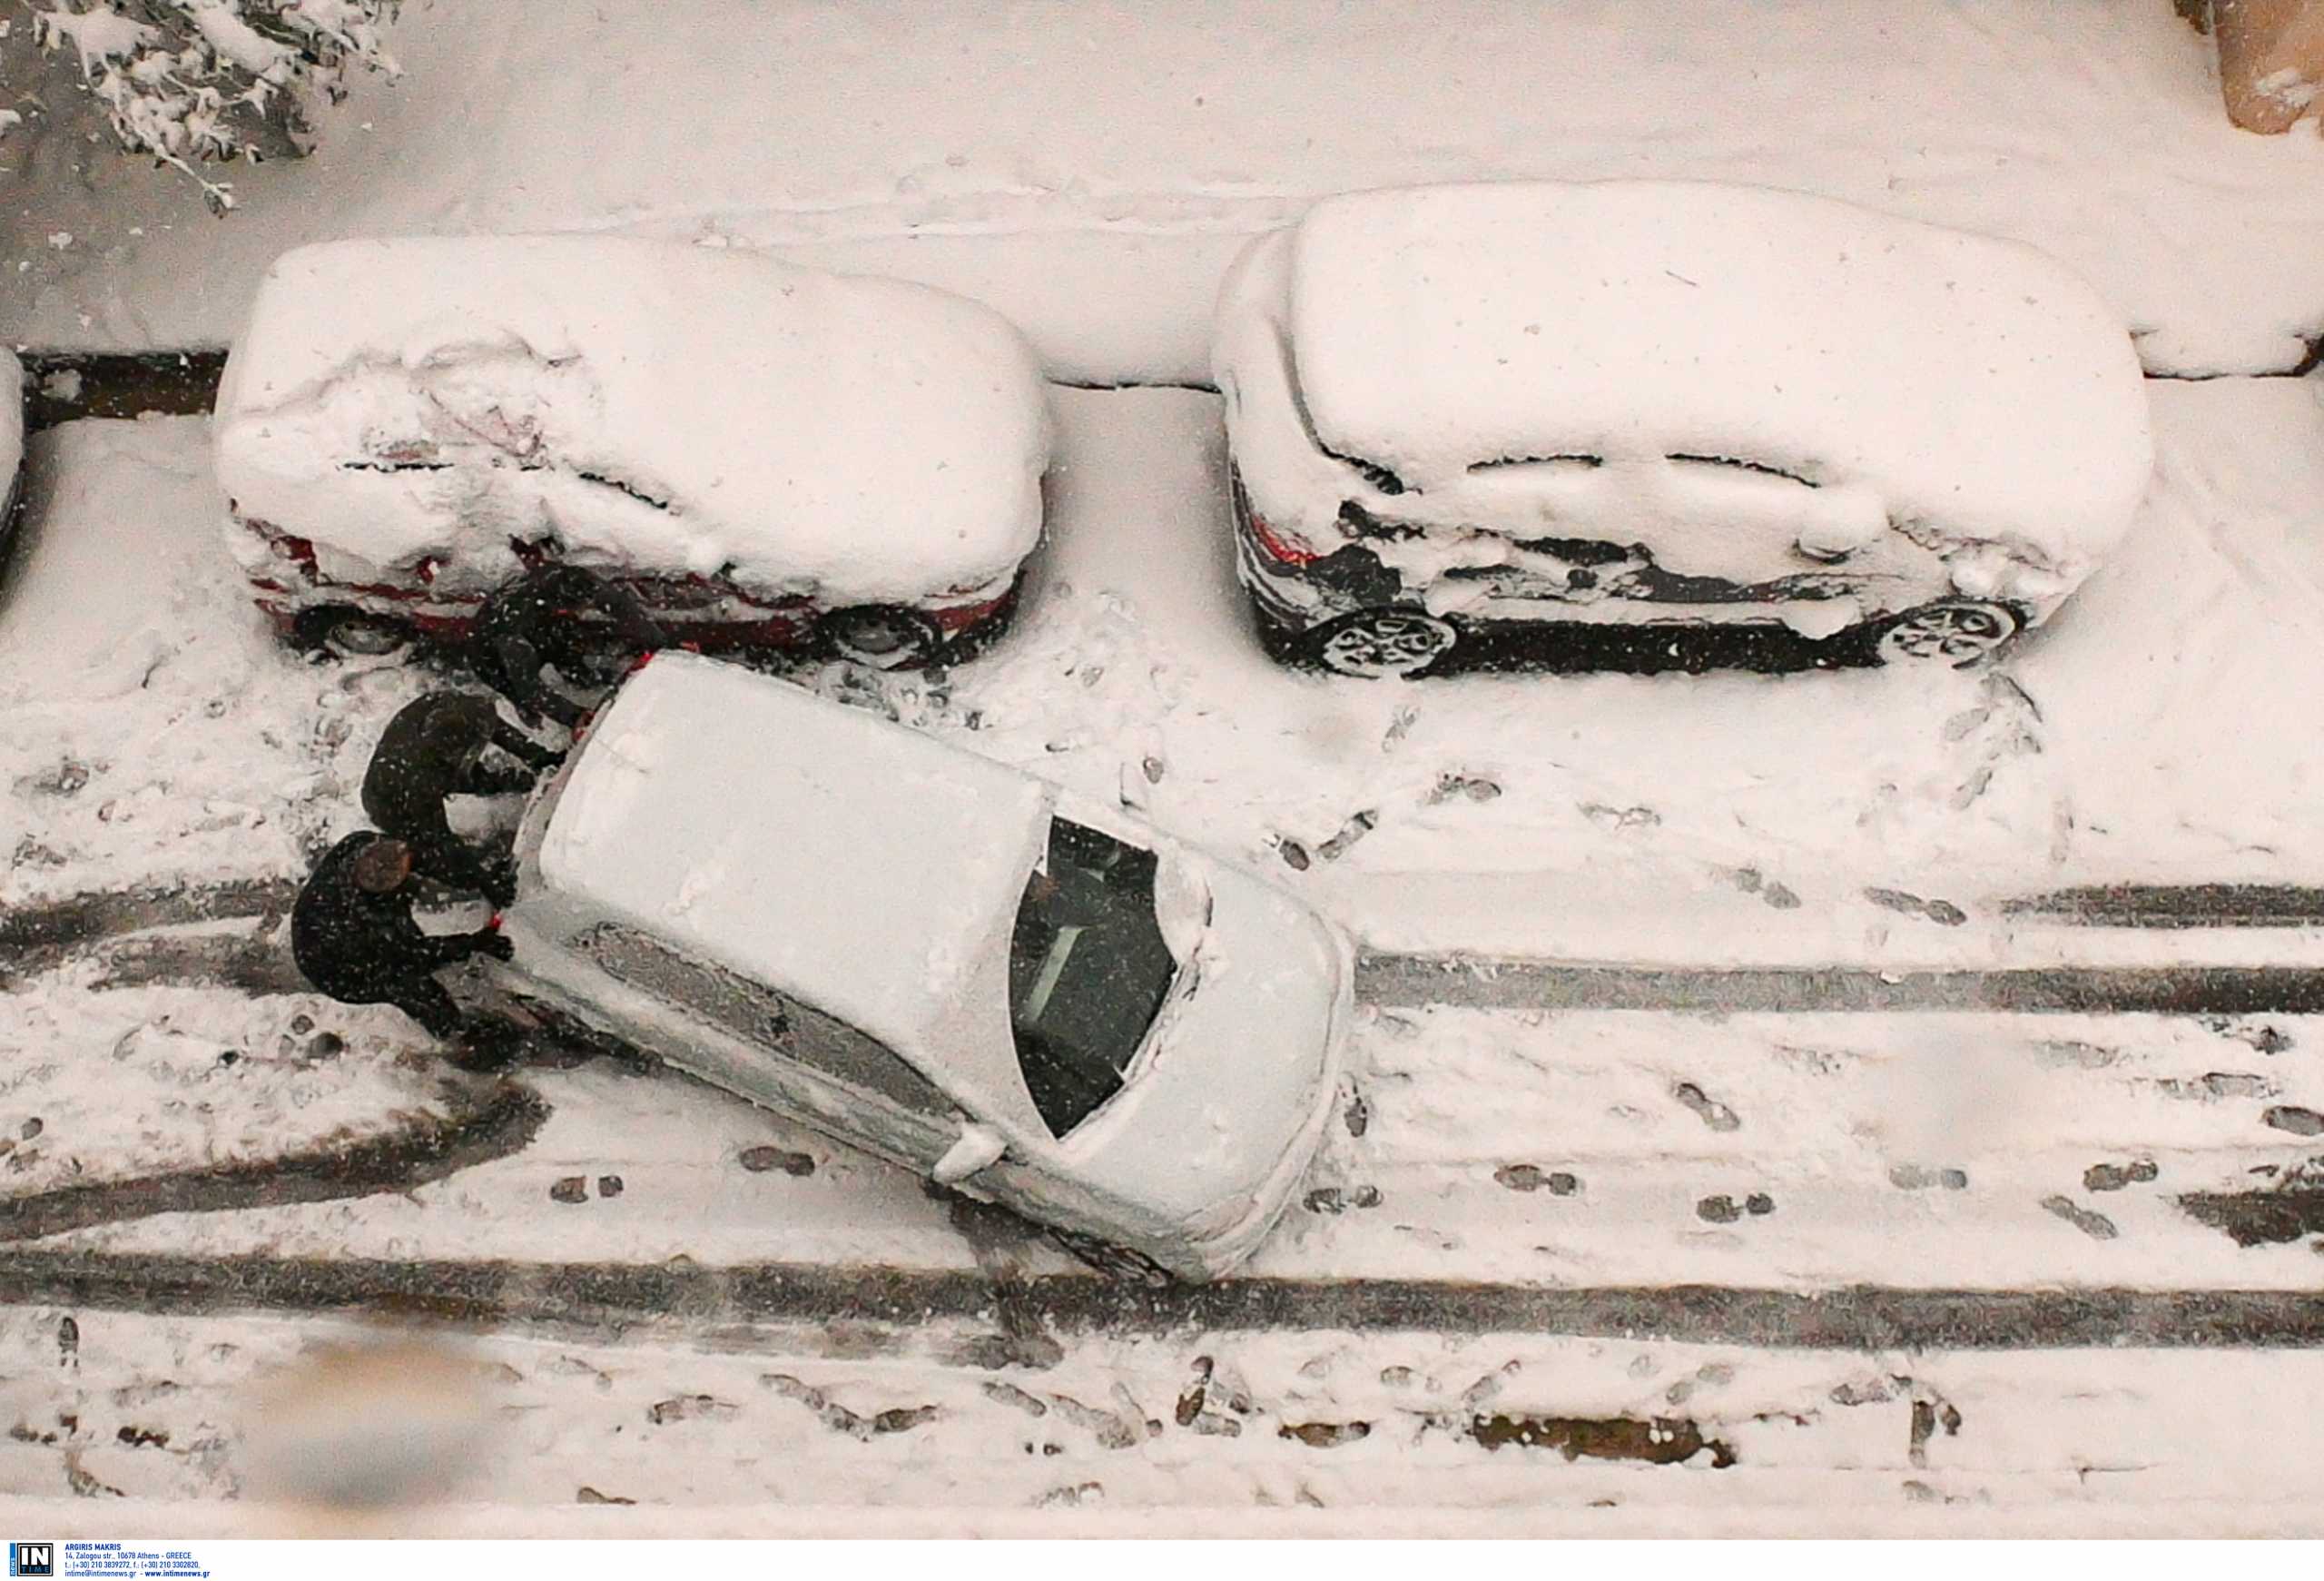 Καιρός – Κρήτη: Αποκλεισμένοι για ώρες στα χιόνια μέσα στα αυτοκίνητά τους – Κλειστά σχολεία στο Λασίθι